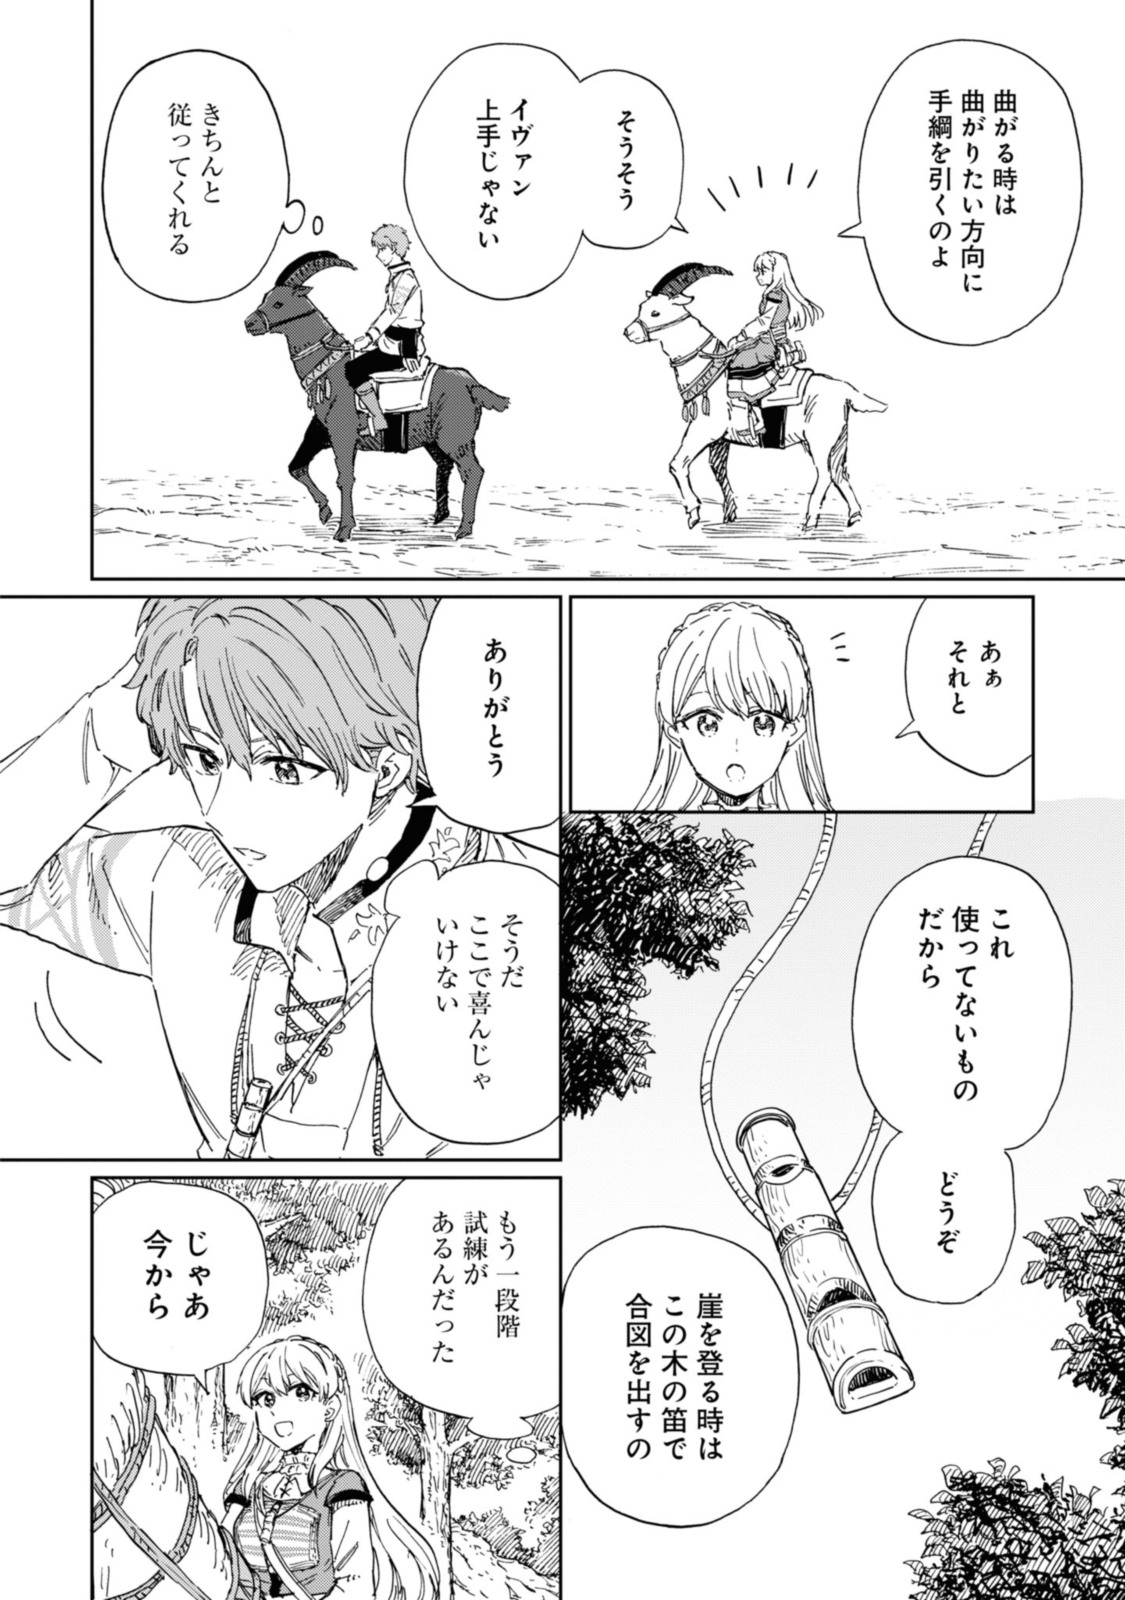 Youhou-ka to Mitsu Kusushi no Hanayome - Chapter 5.1 - Page 6